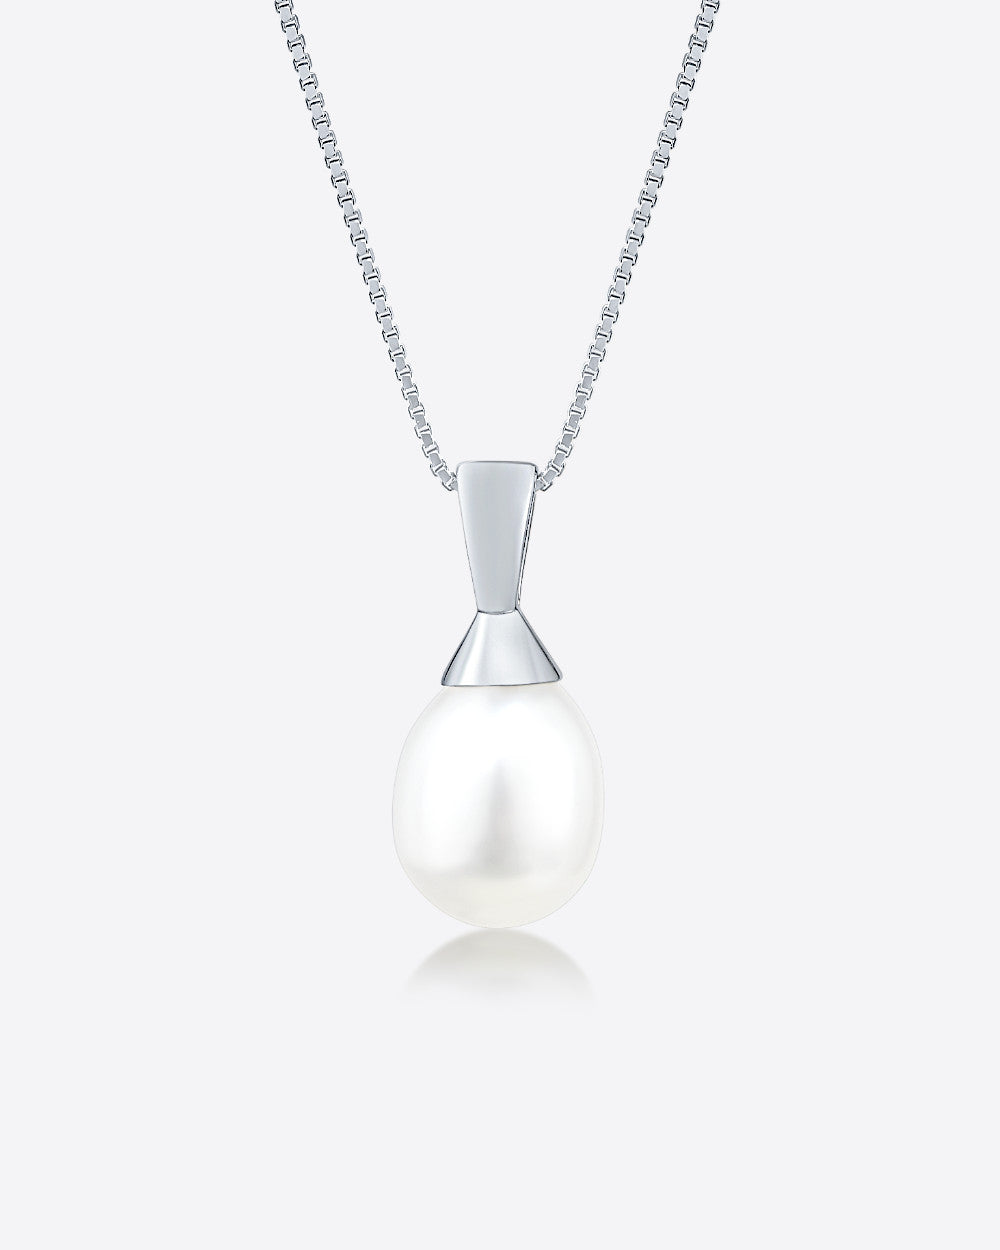 DANIEL CLIFFORD „Maggie“ Damen Halskette Silber 925 rhodiniert Anhänger Süßwasserzucht Perle, 45cm Silberkette mit Perlenanhänger